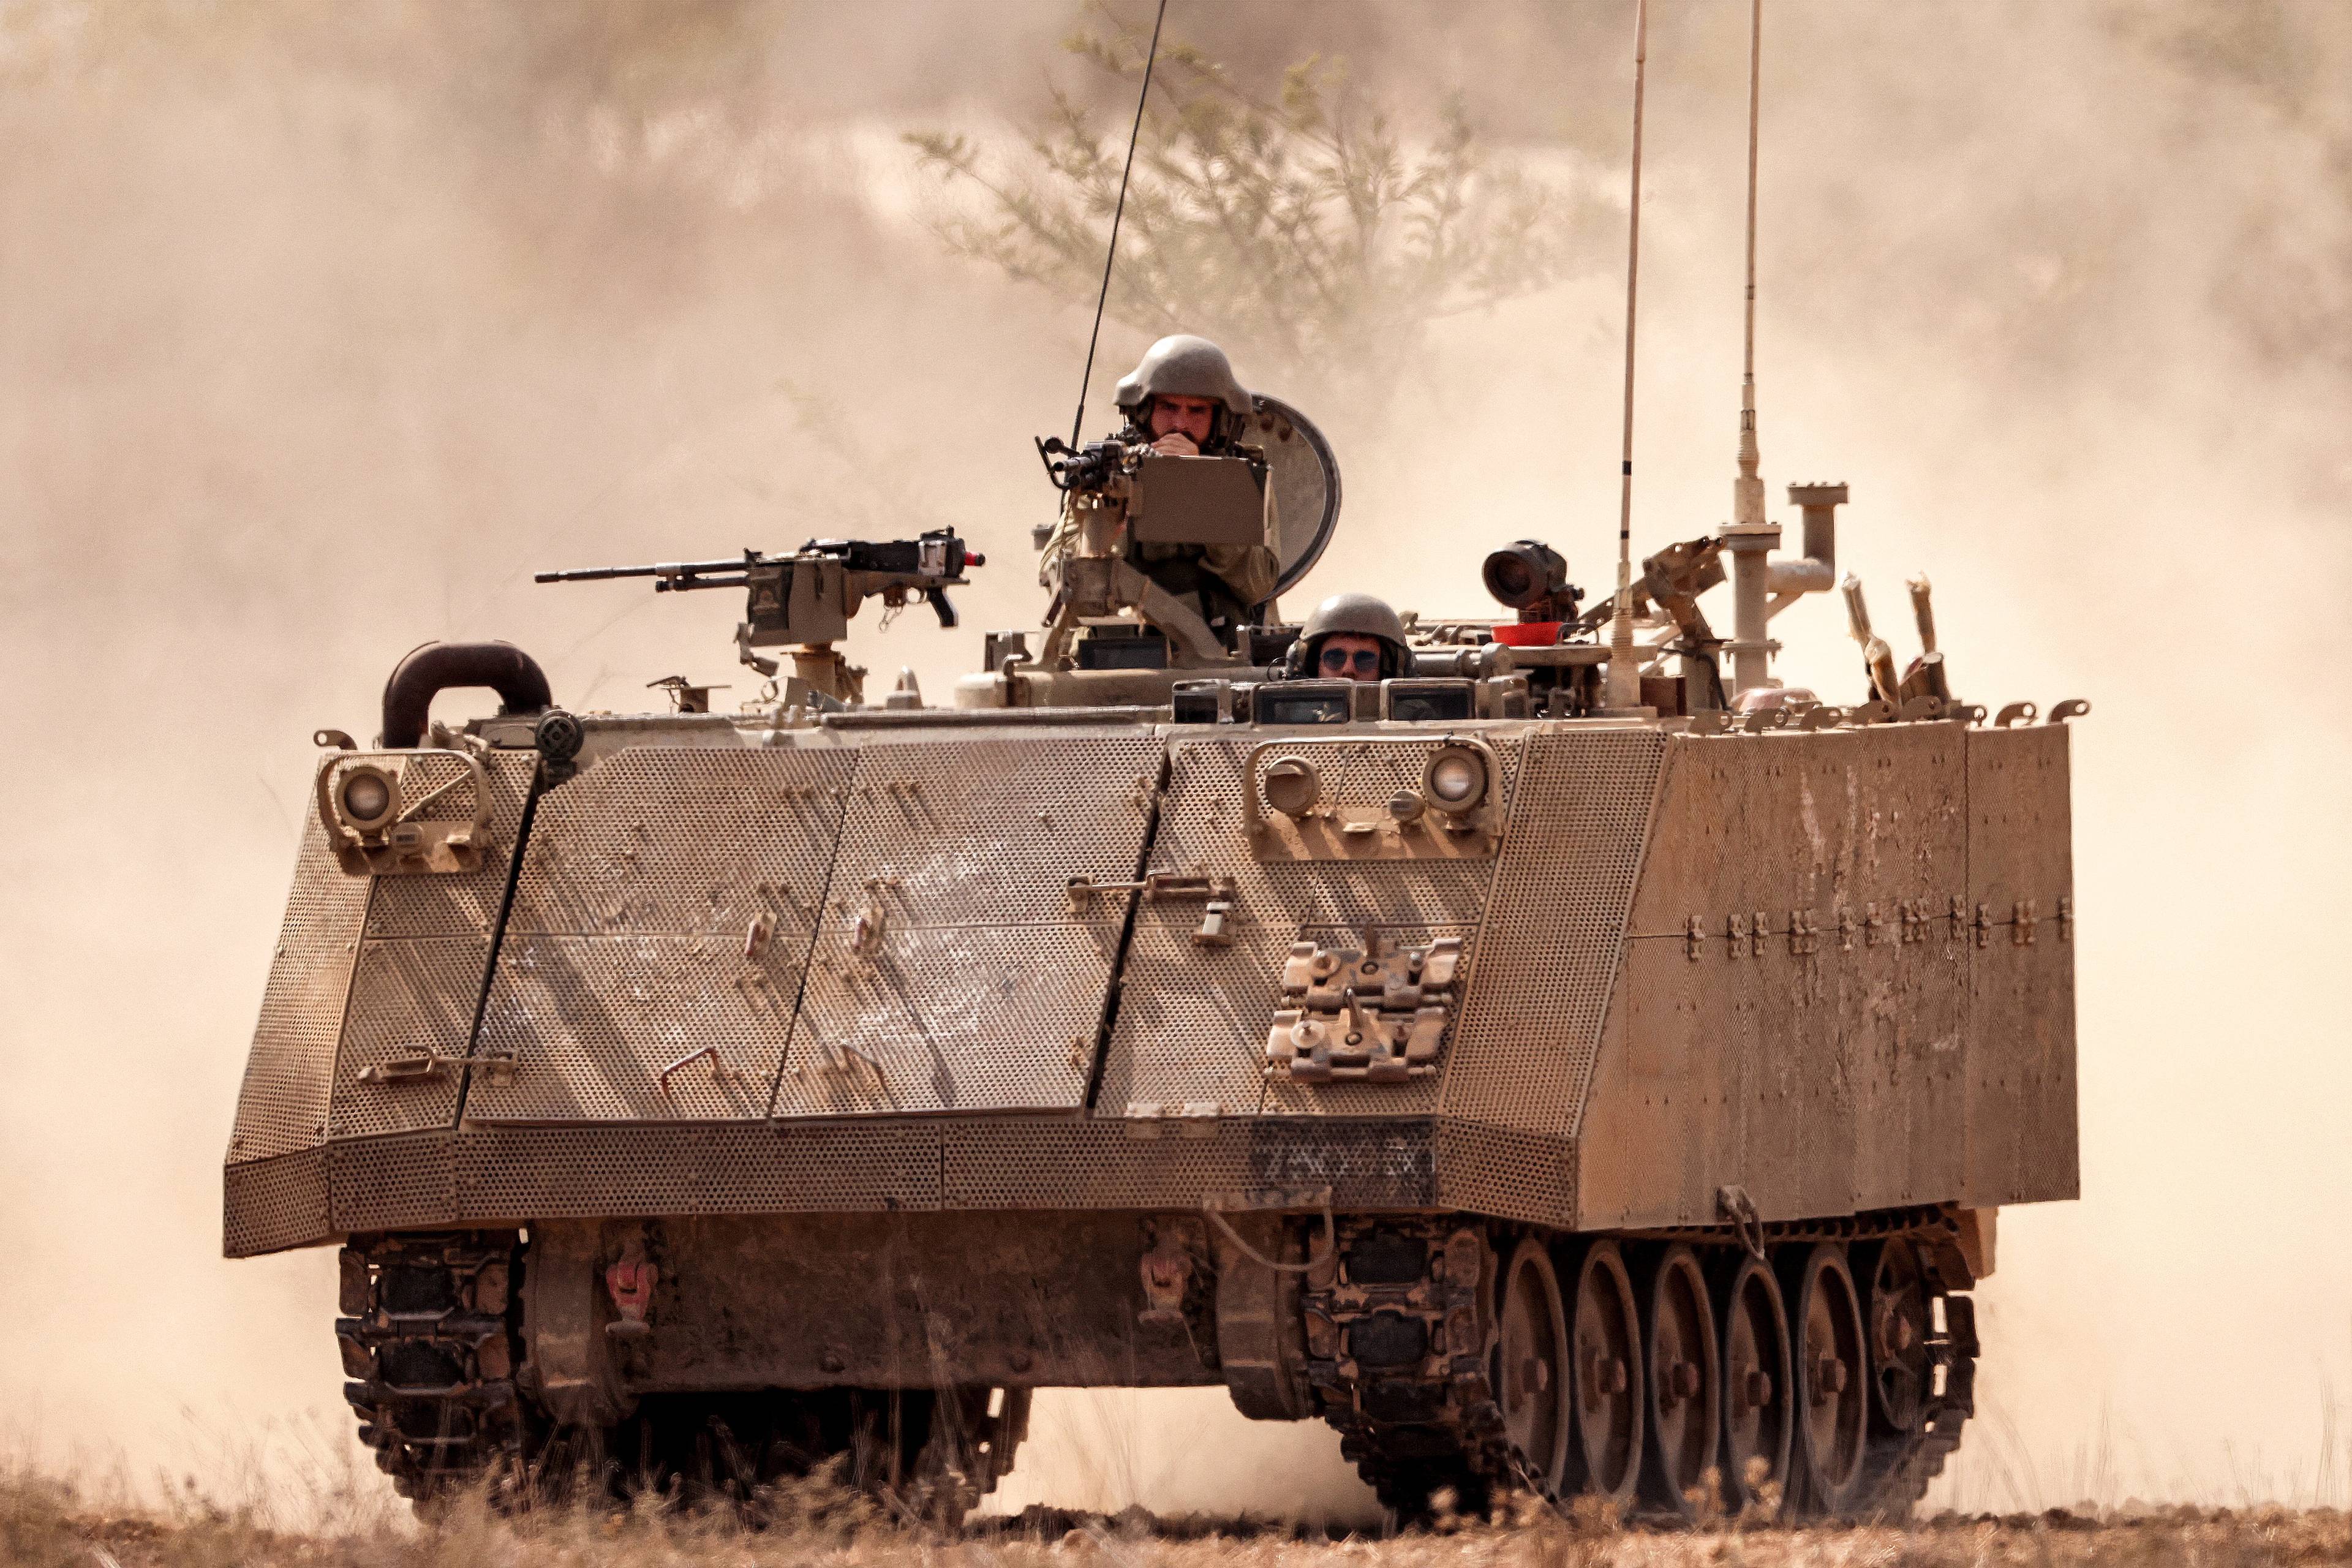 Izraelski pojazd opancerzony. na wieżyczce - żołnierz